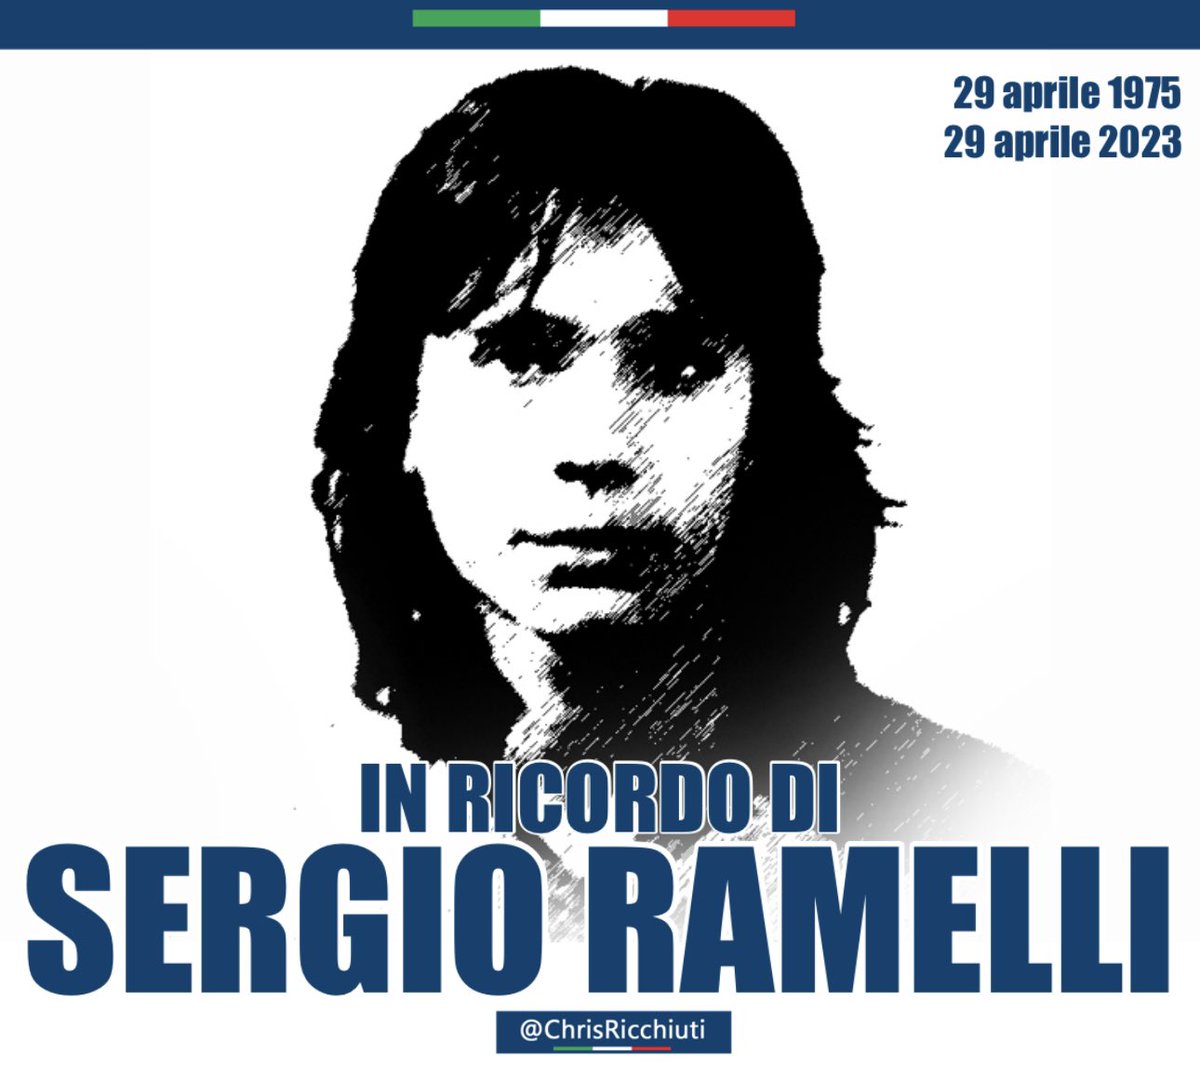 #29aprile
In ricordo di Sergio #Ramelli, giovane militante del #FrontedellaGioventù ammazzato a colpi di chiave inglese dall’estrema sinistra per aver condannato l’operato delle Brigate Rosse in un tema scolastico.

#SergioRamelli #IoNonDimentico